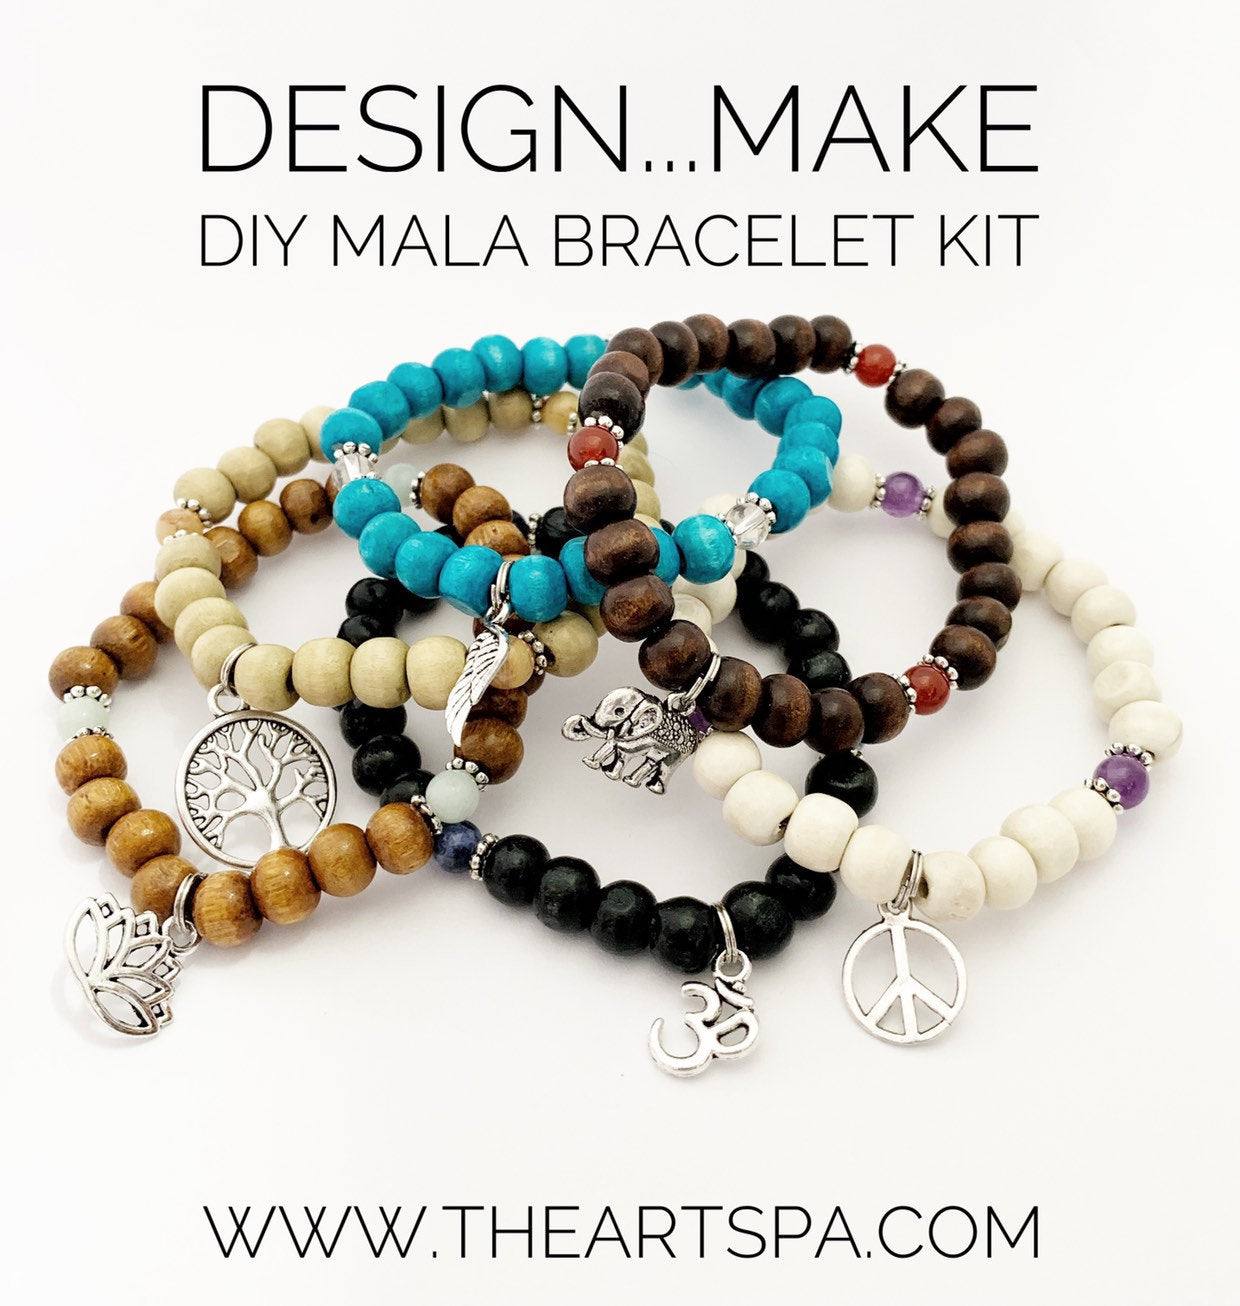 Design...Make - DIY Mala Bracelet - DIY Kit - 27 Beads - Prayer Beads - Custom Mala Bracelet Kit - Intention Bracelet - Simple Reminder